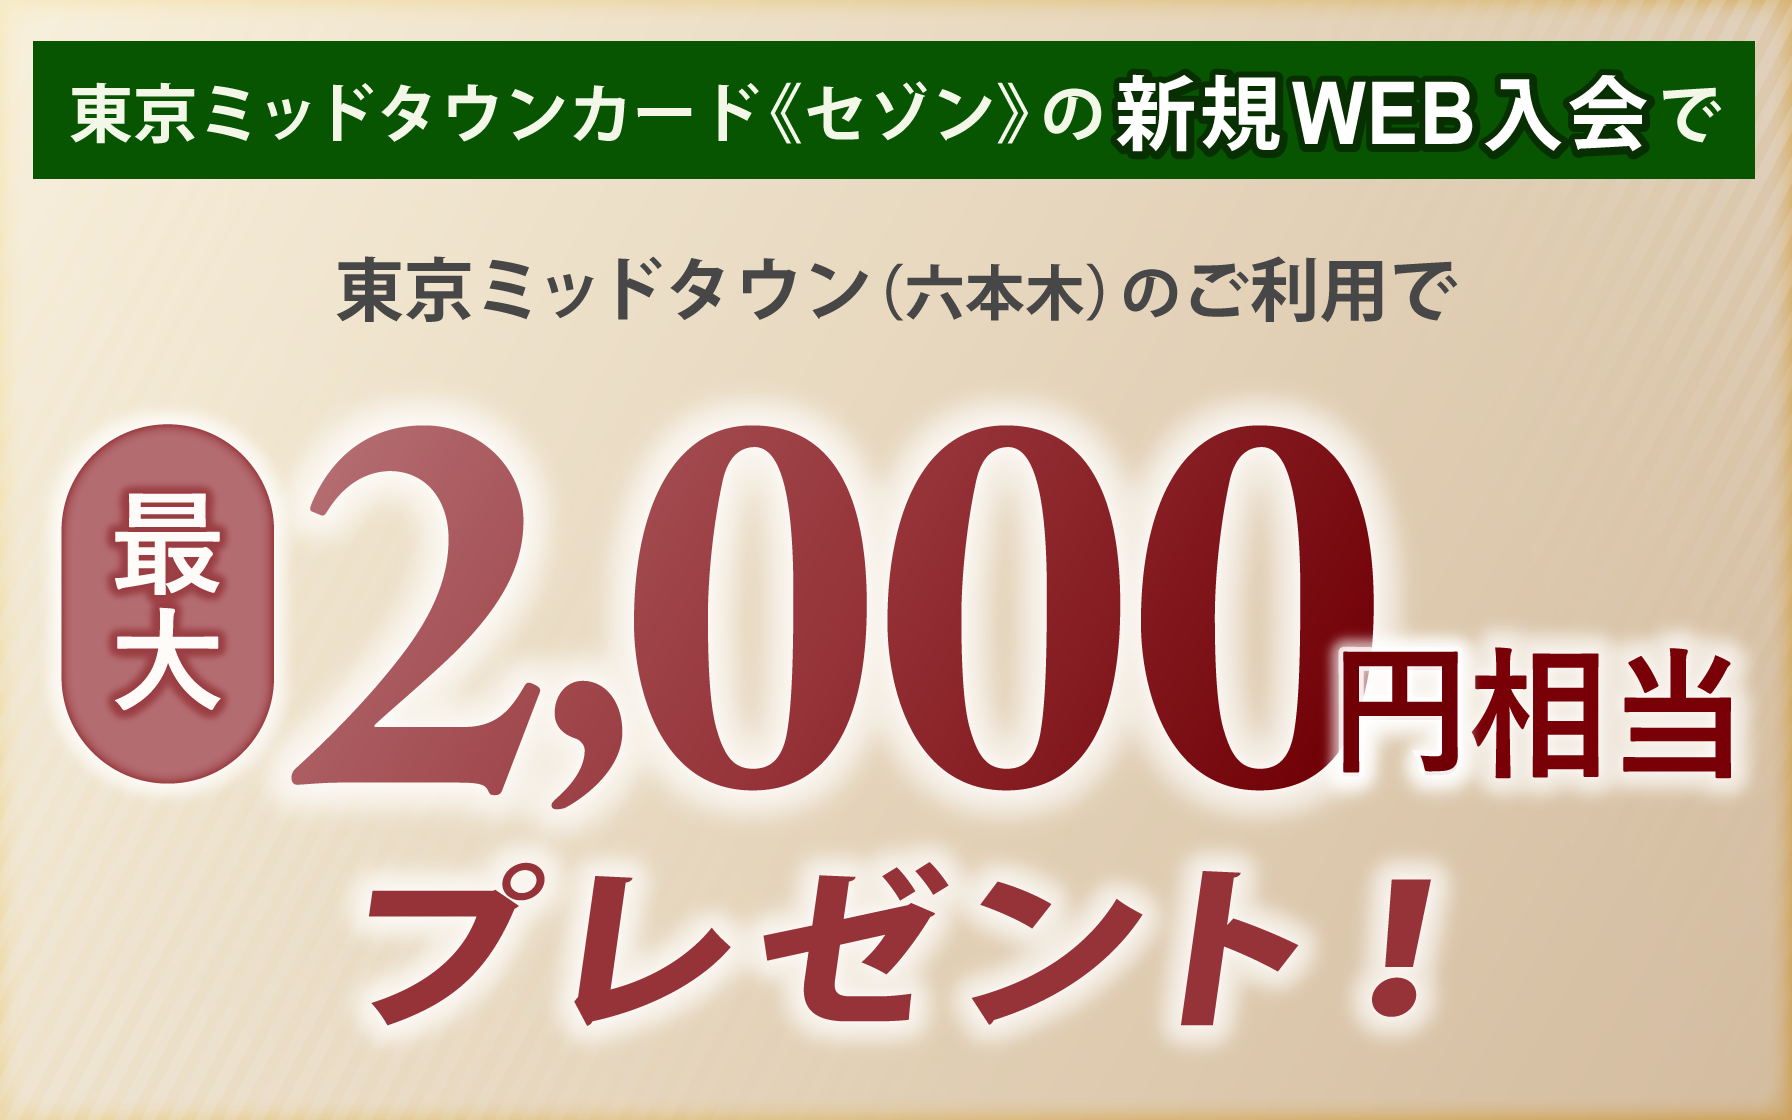 東京ミッドタウンカード《セゾン》の新規Web入会のうえ、東京ミッドタウン（六本木）でご利用いただくと最大2,000円相当プレゼント！